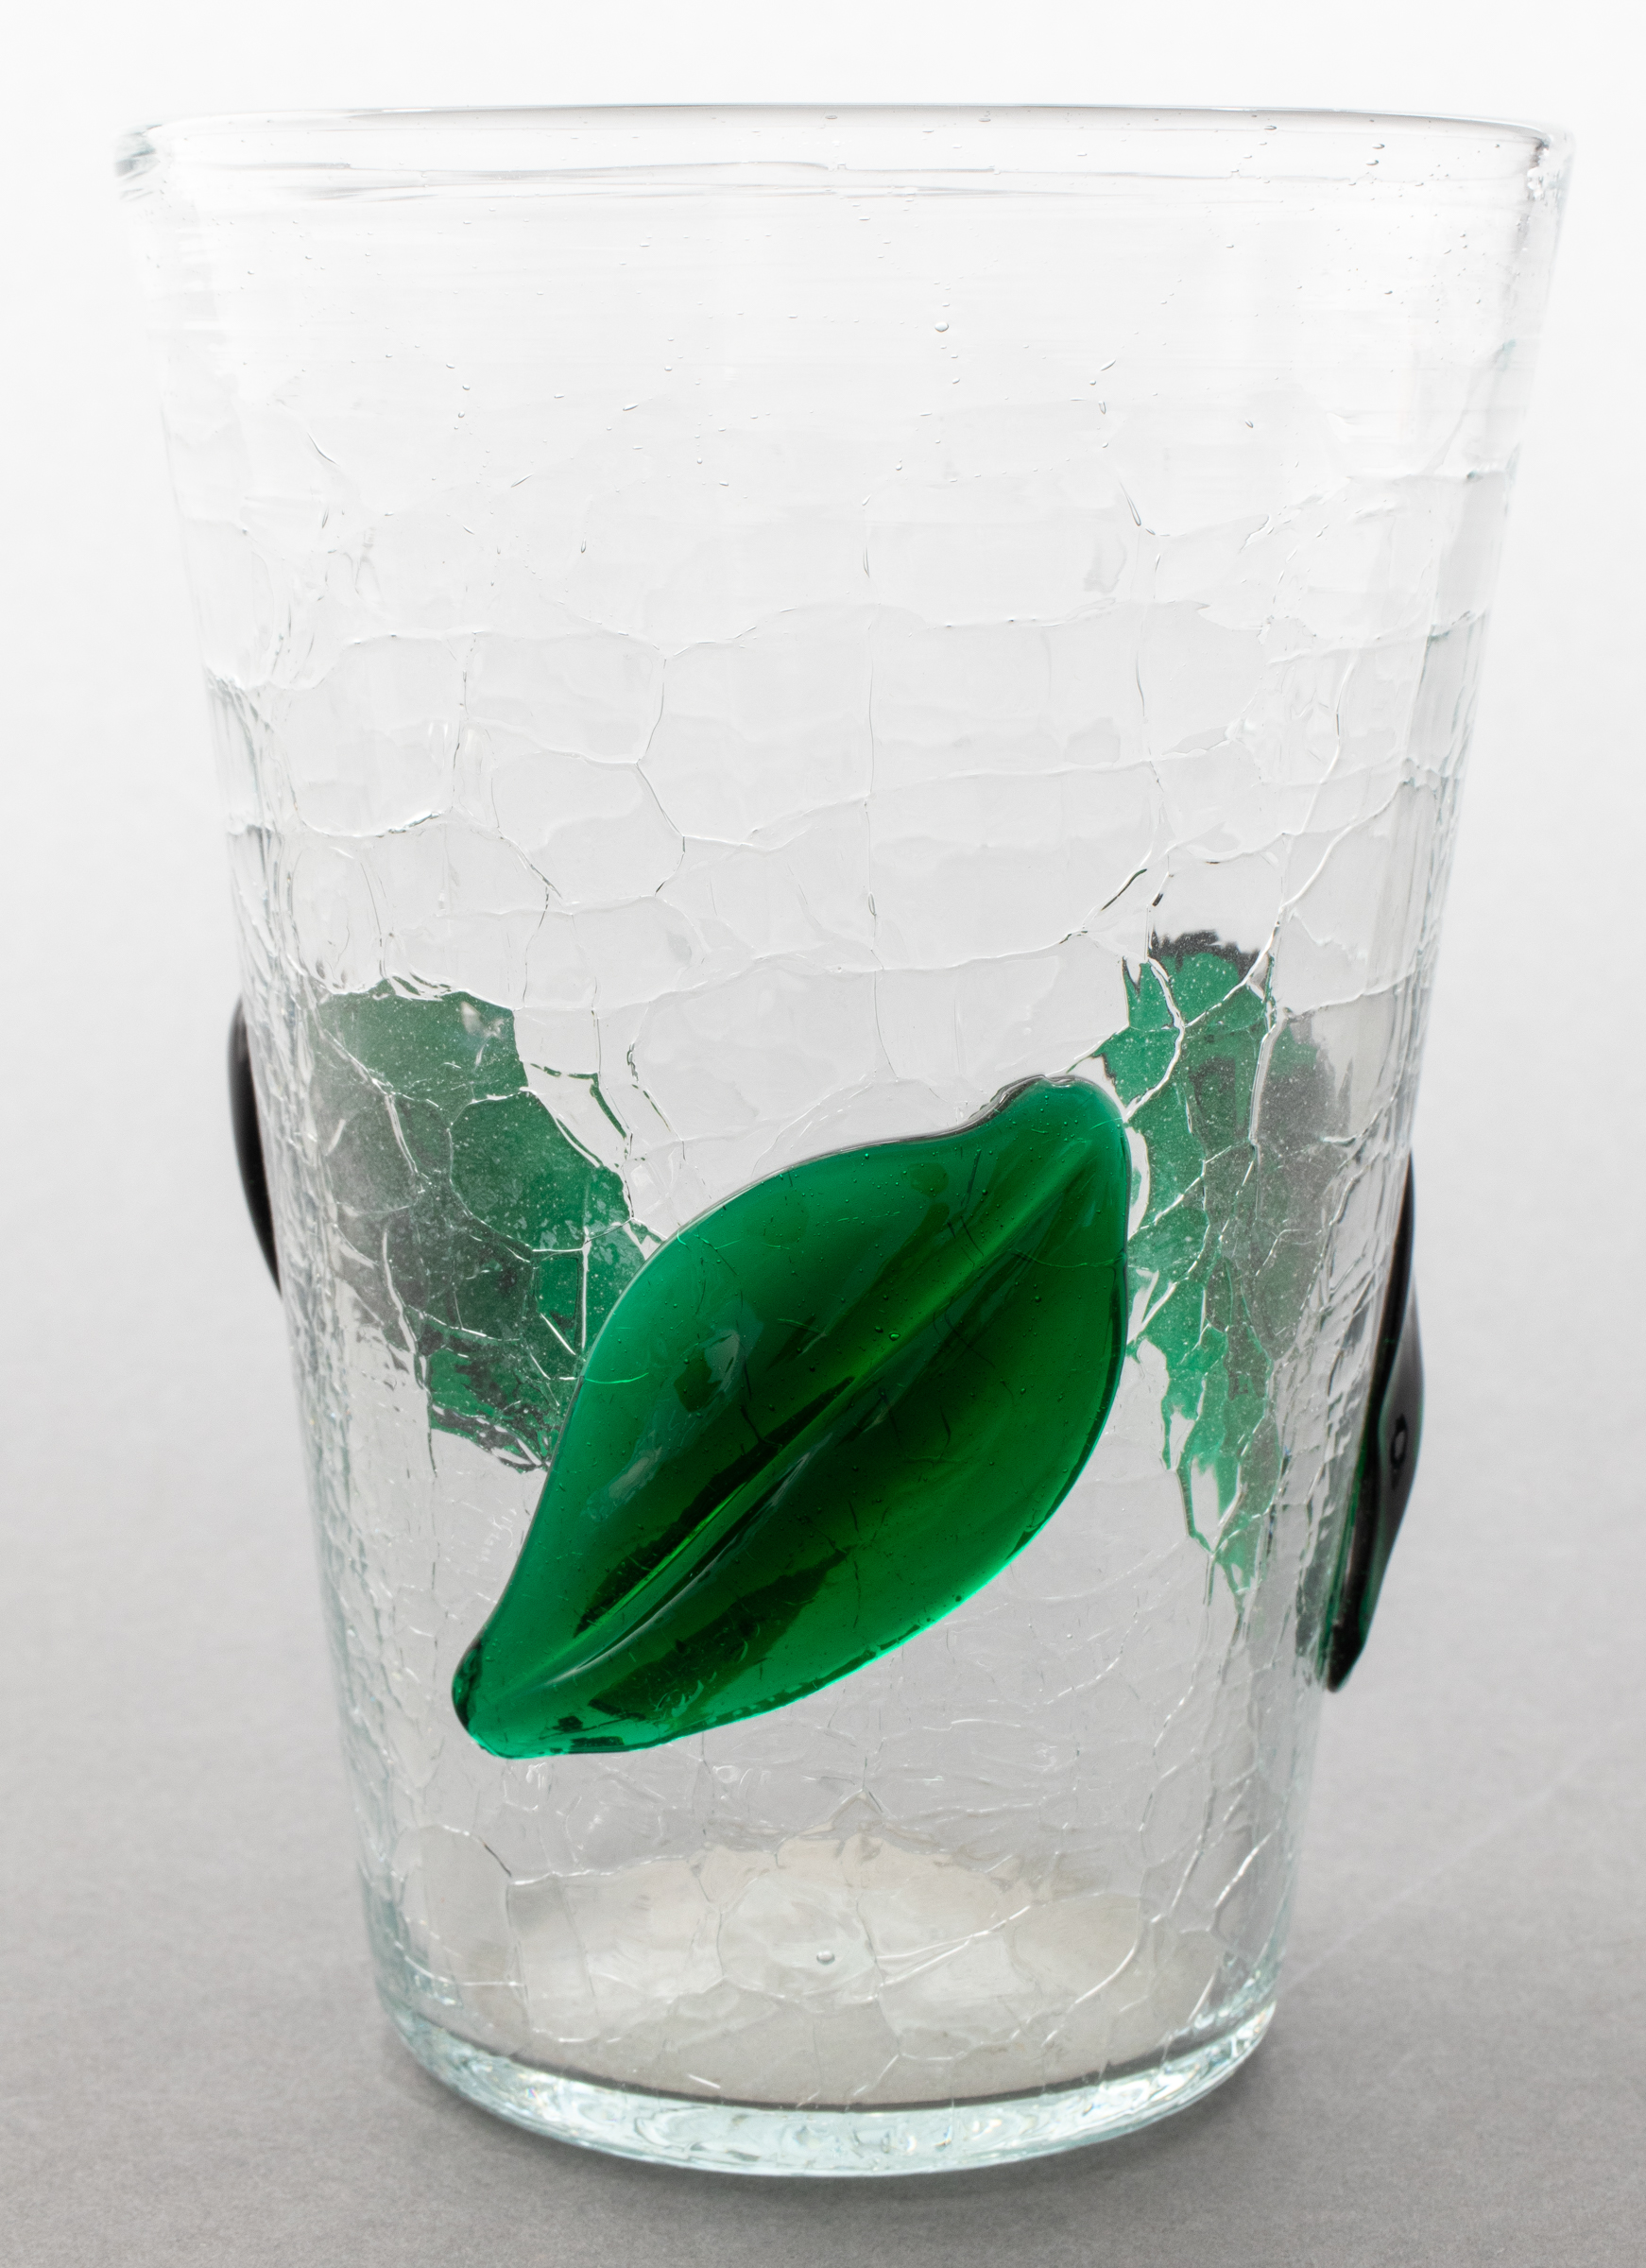 GLASS VASE WITH GREEN LEAF DESIGN